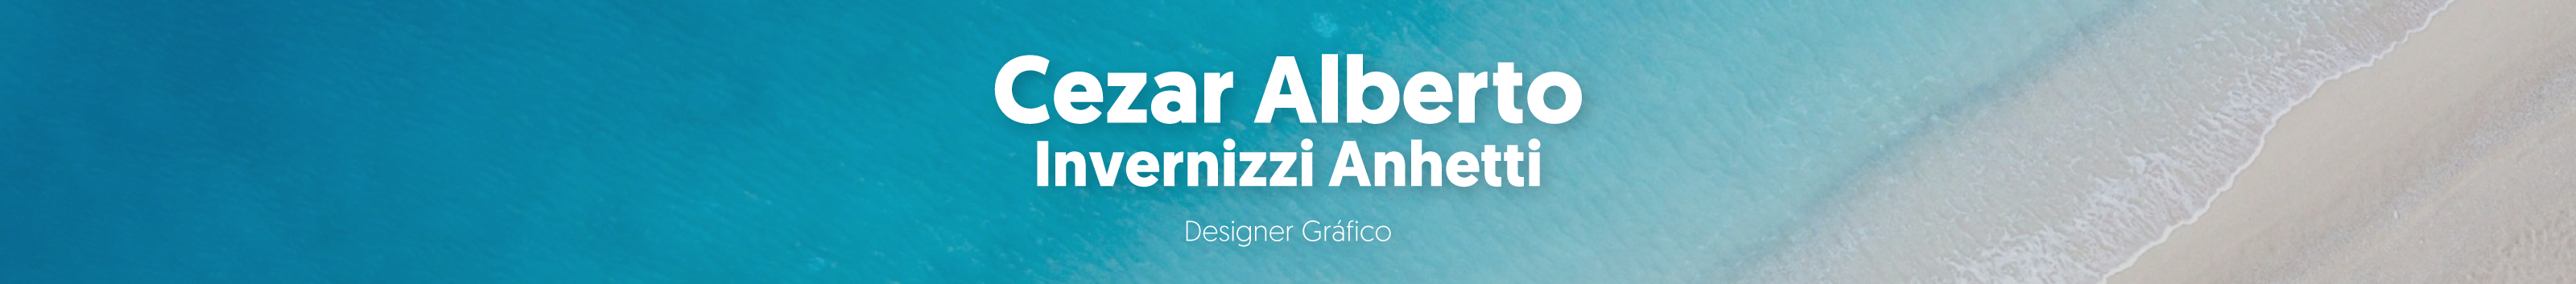 Cezar Alberto's profile banner